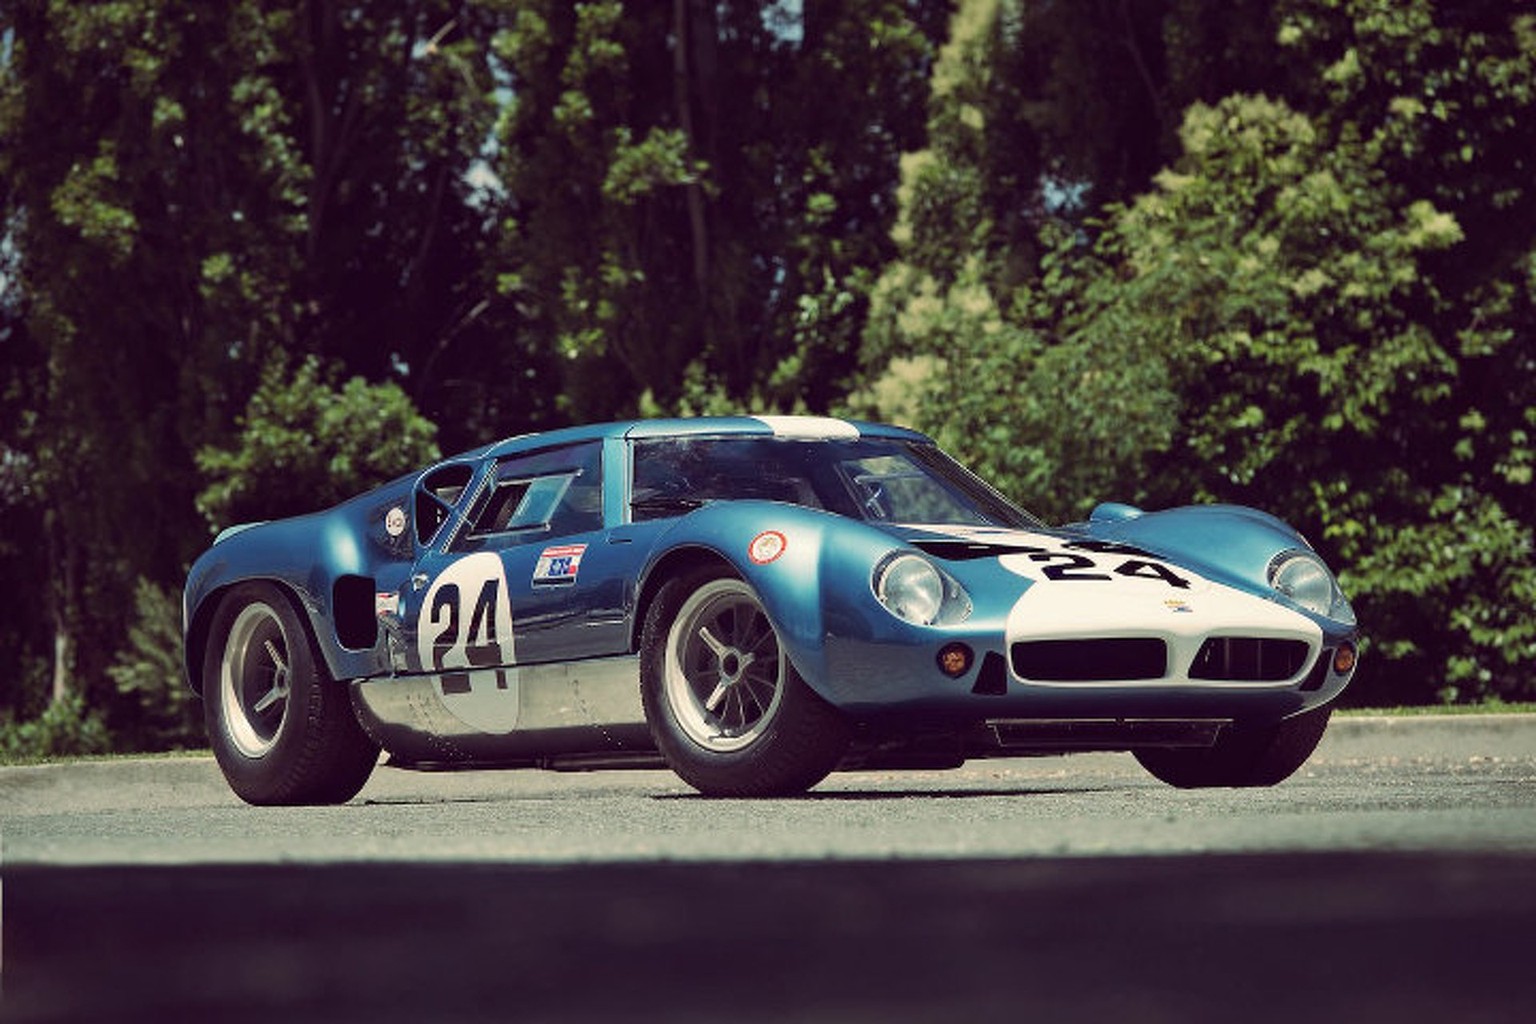 Lola Mk6 GT Le Mans 1963 motorsport auto retro history https://rmsothebys.com/en/home/auctions/?lot_id=1068247